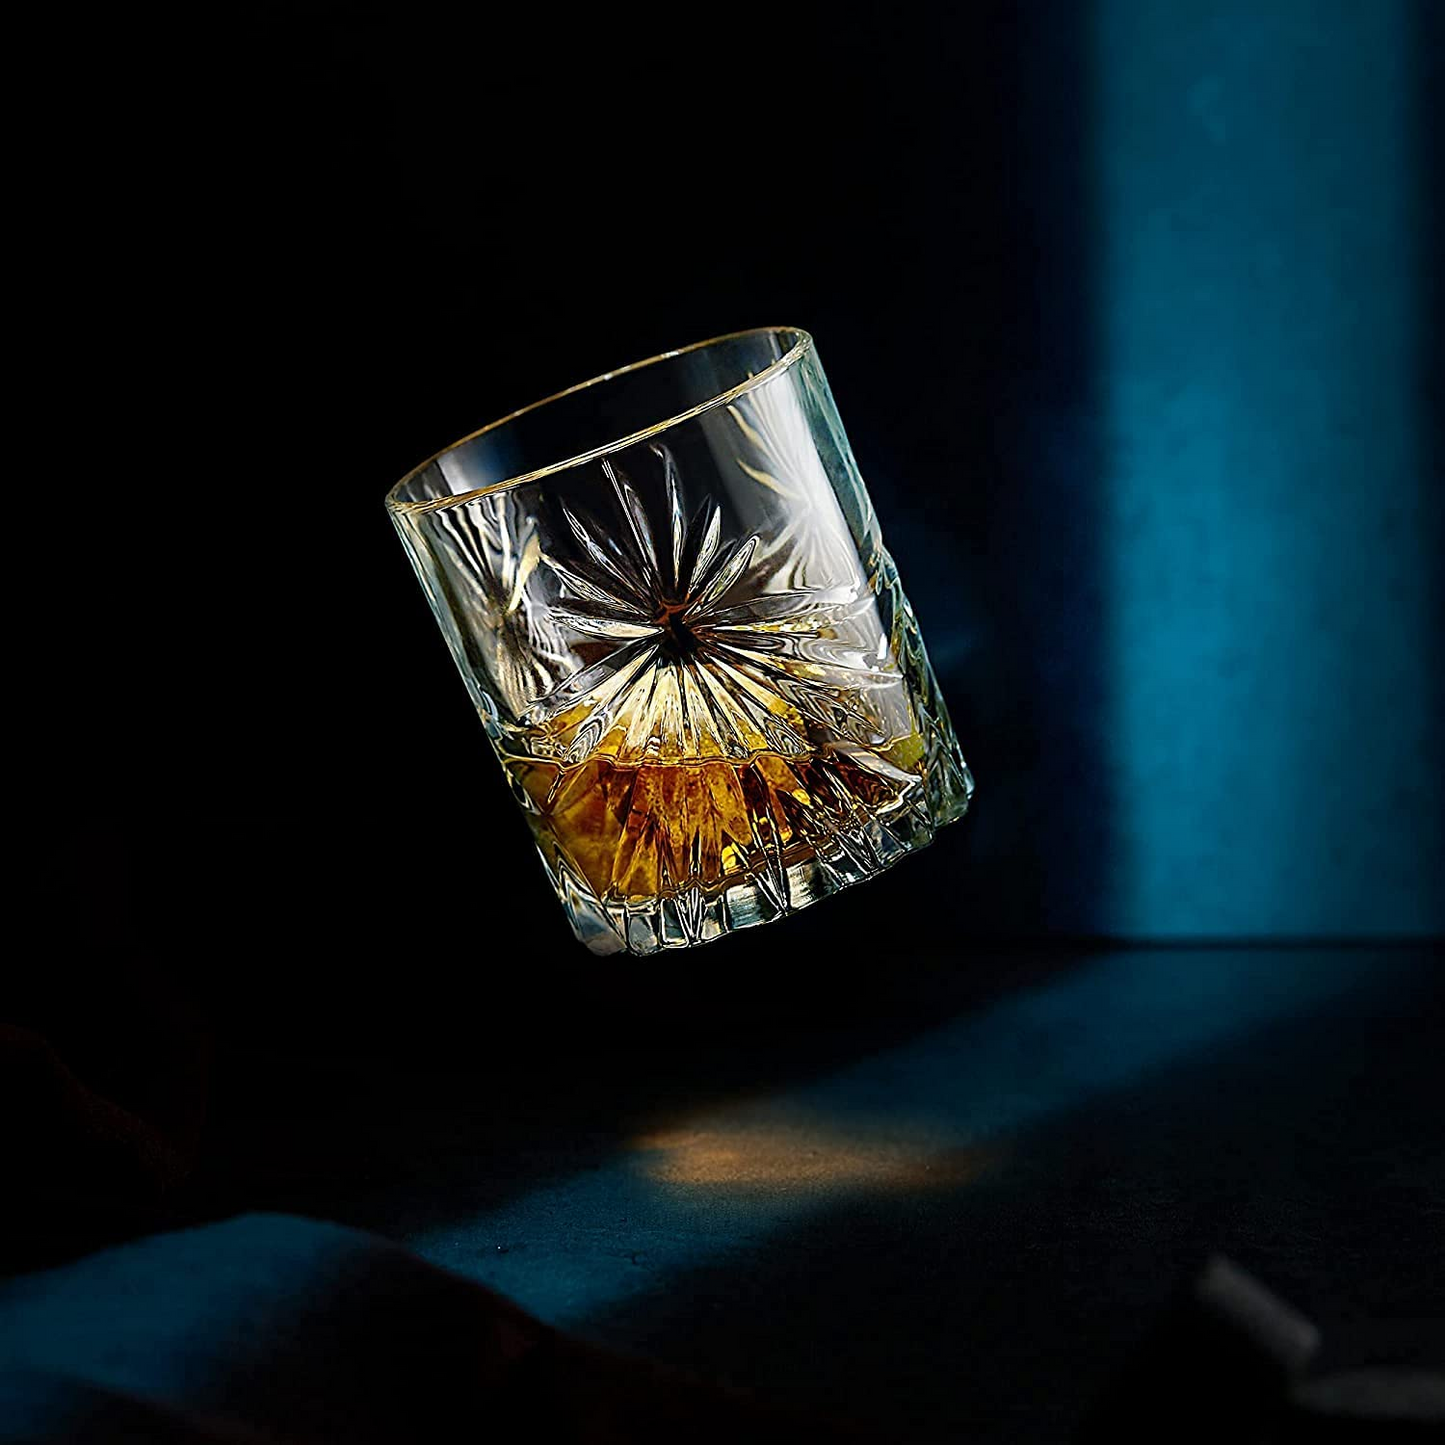 Whiskey Stones & Crystal Glass Gift Set - Soleil Tumbler (11.7oz)